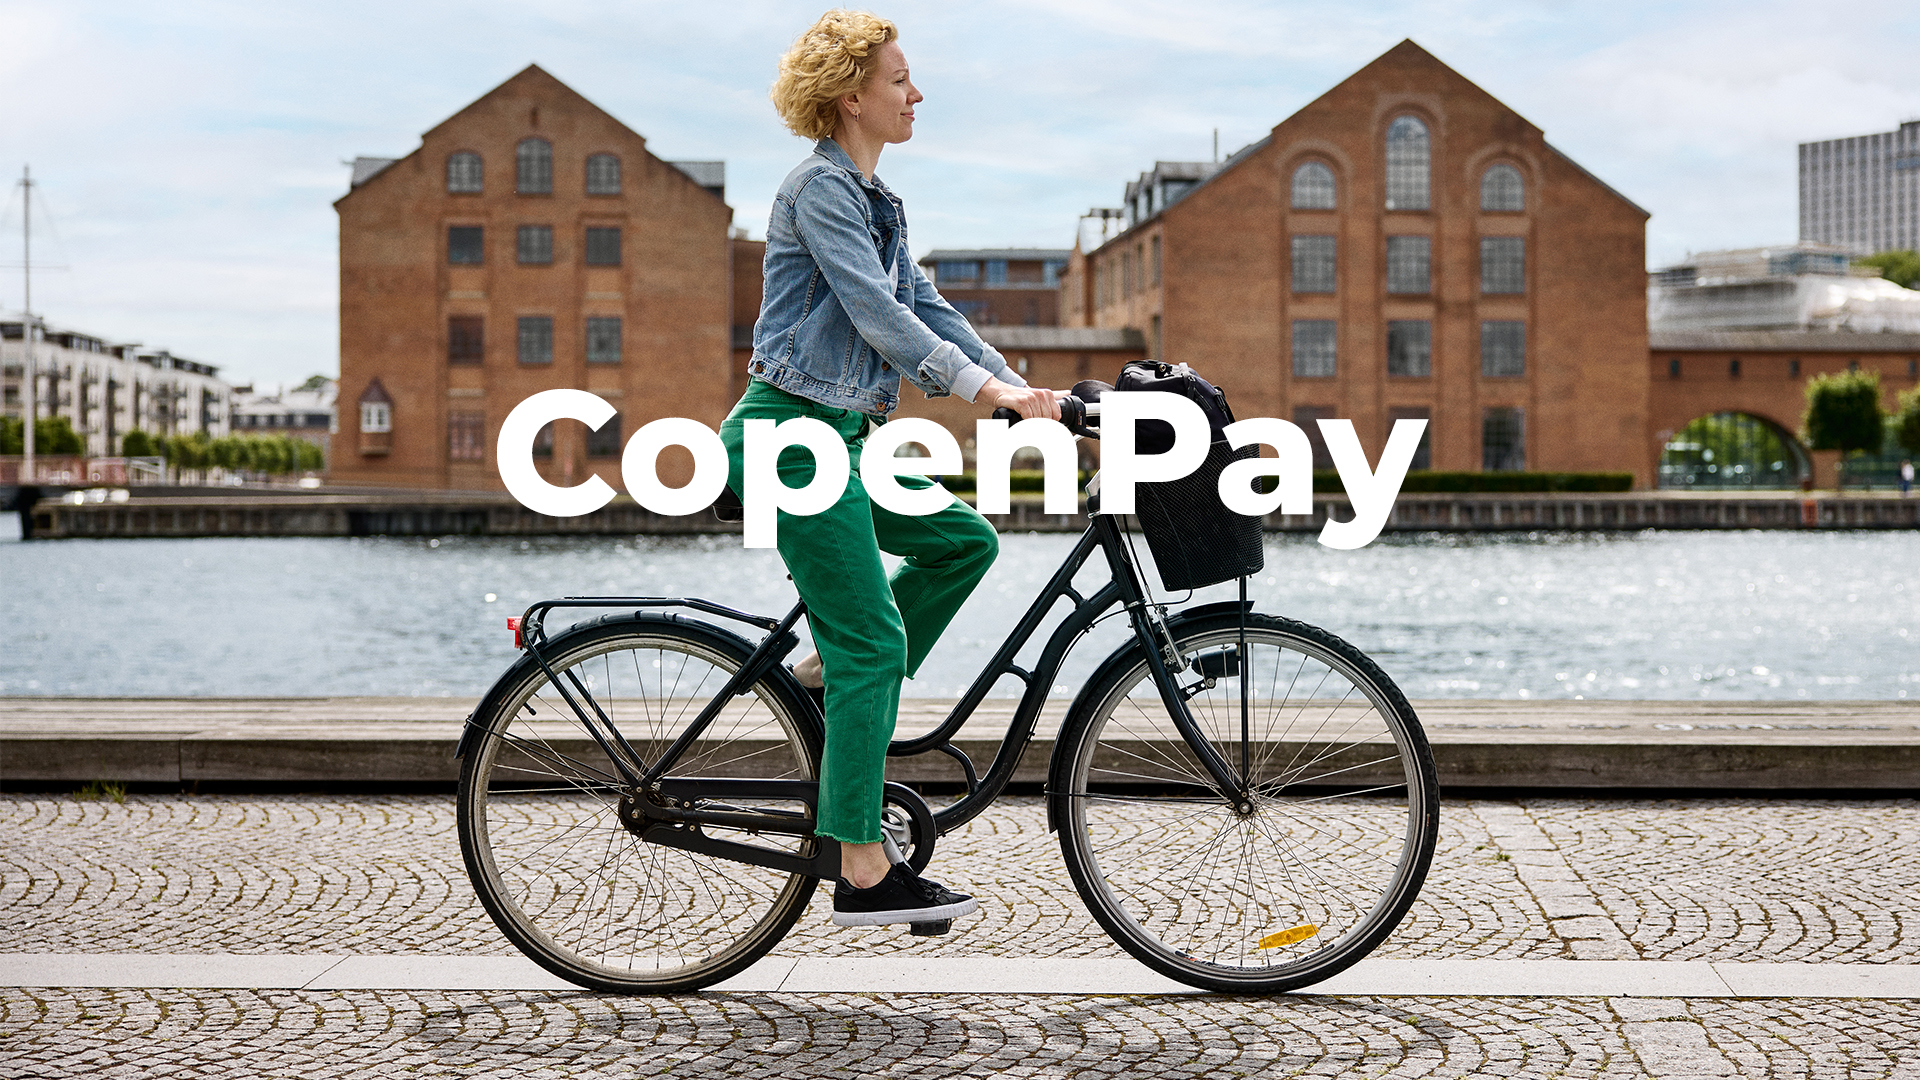 코펜하겐, 친환경 여행객에게 무료 음식과 투어 제공한다